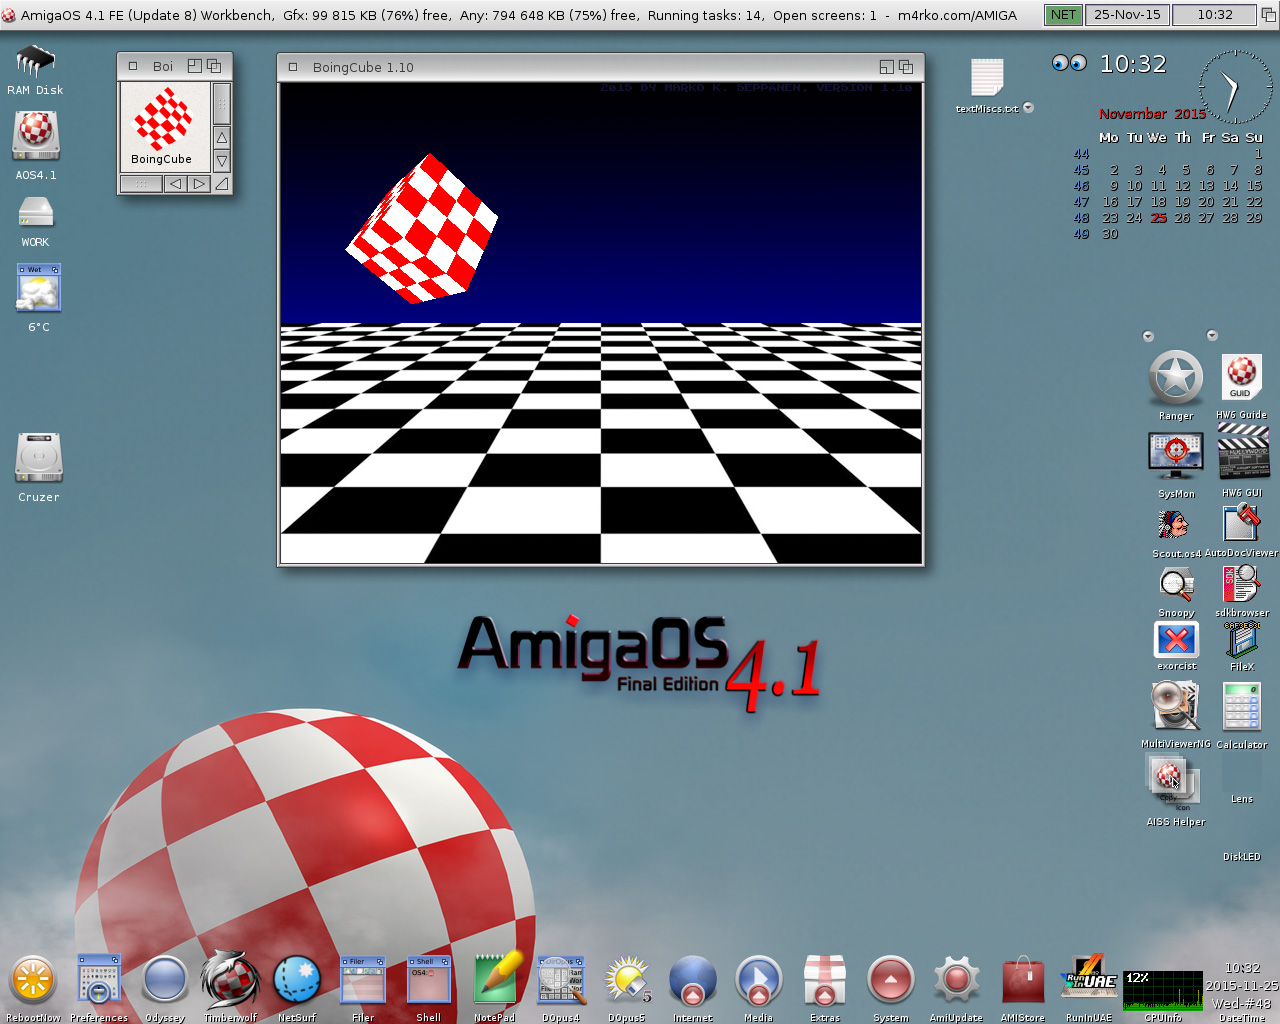 BoingCube-1.10-AmigaOS 4.1 FE